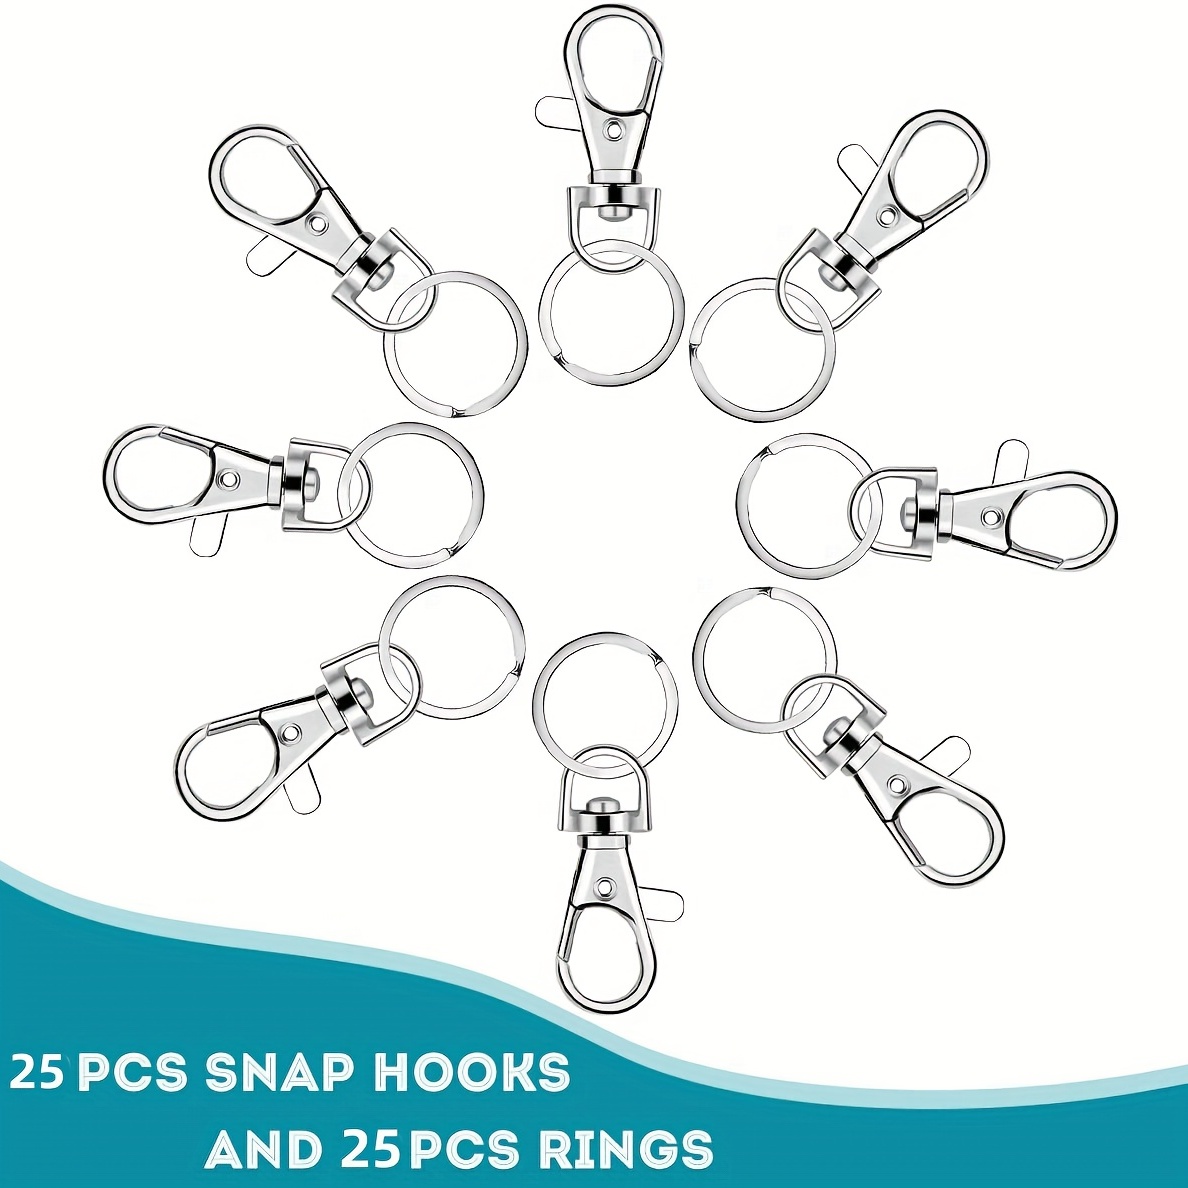 100pcs Round Key Rings Metal Flat Split Key Ring 25/30mm Bulk For Crafts  Circular Gift